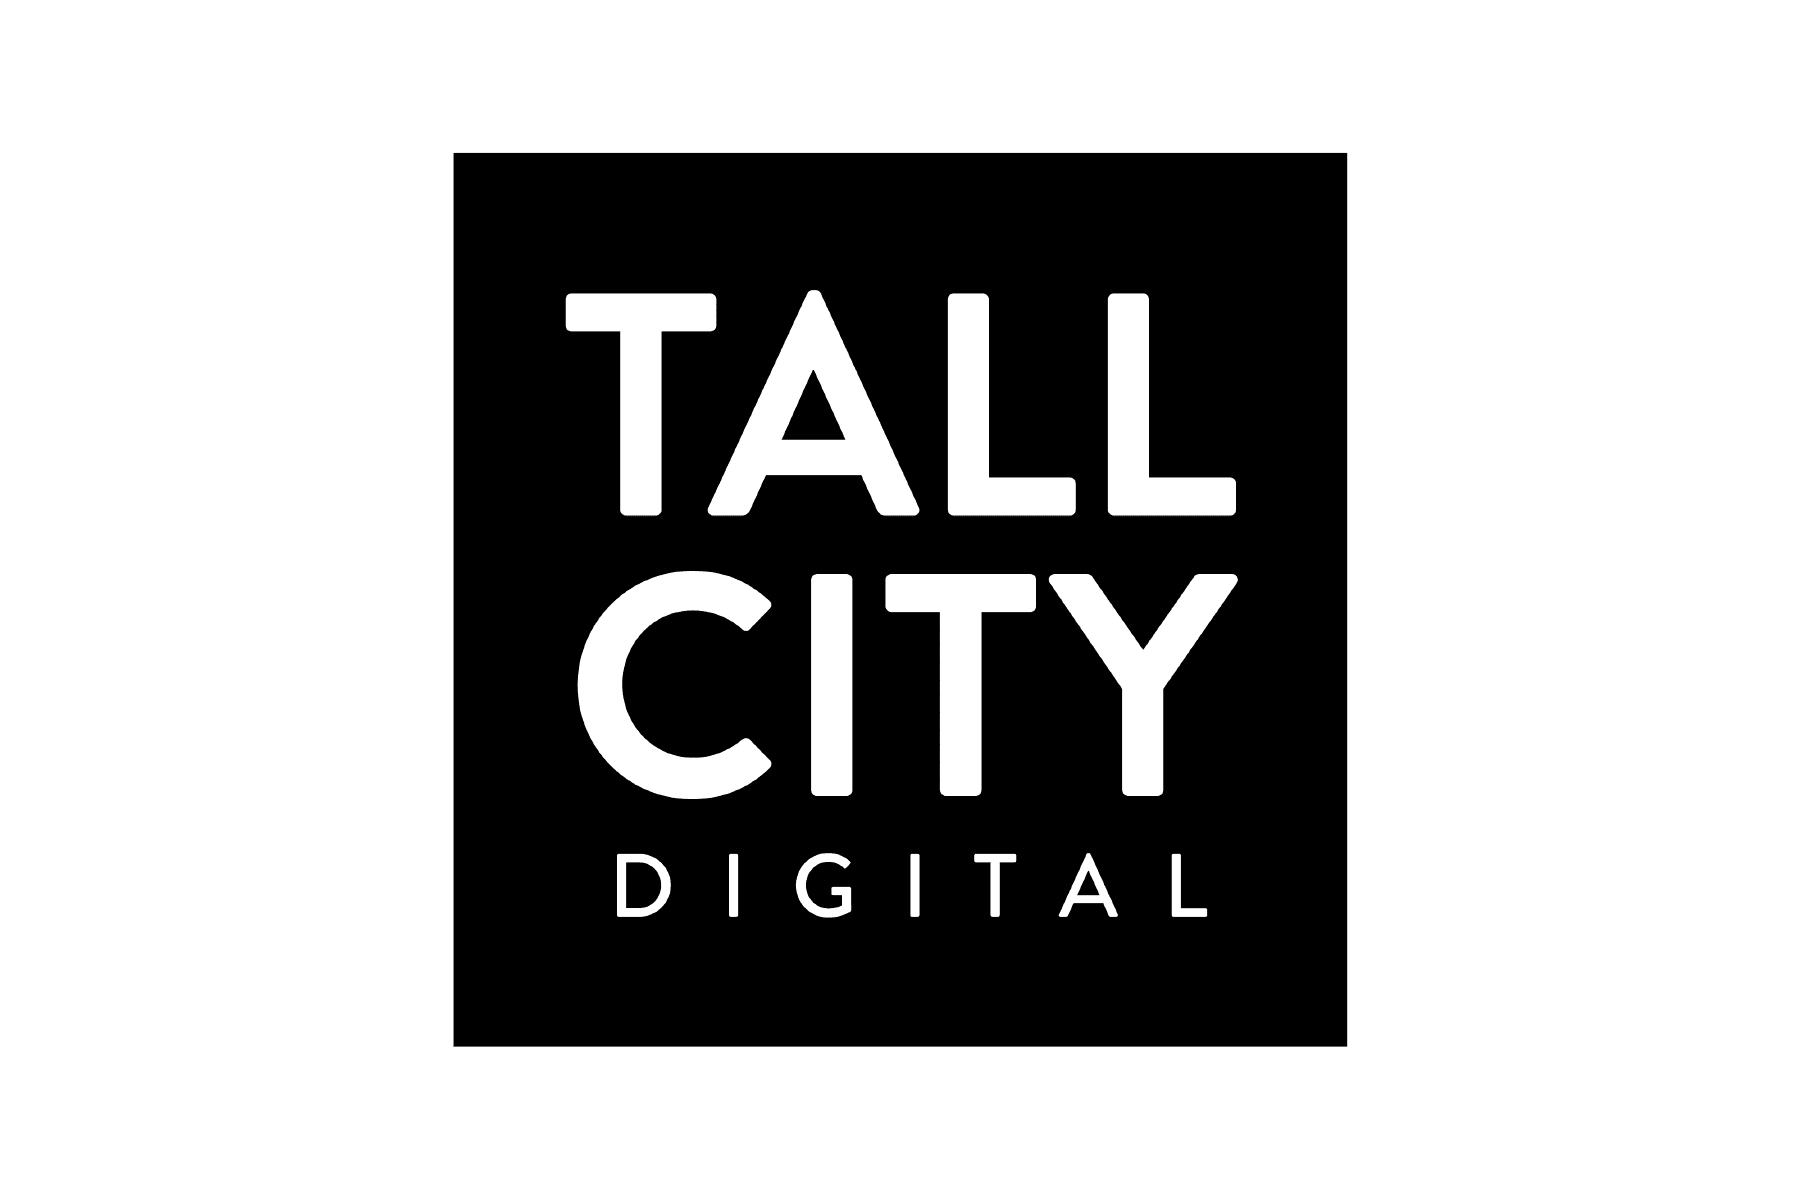 Tall City Digital